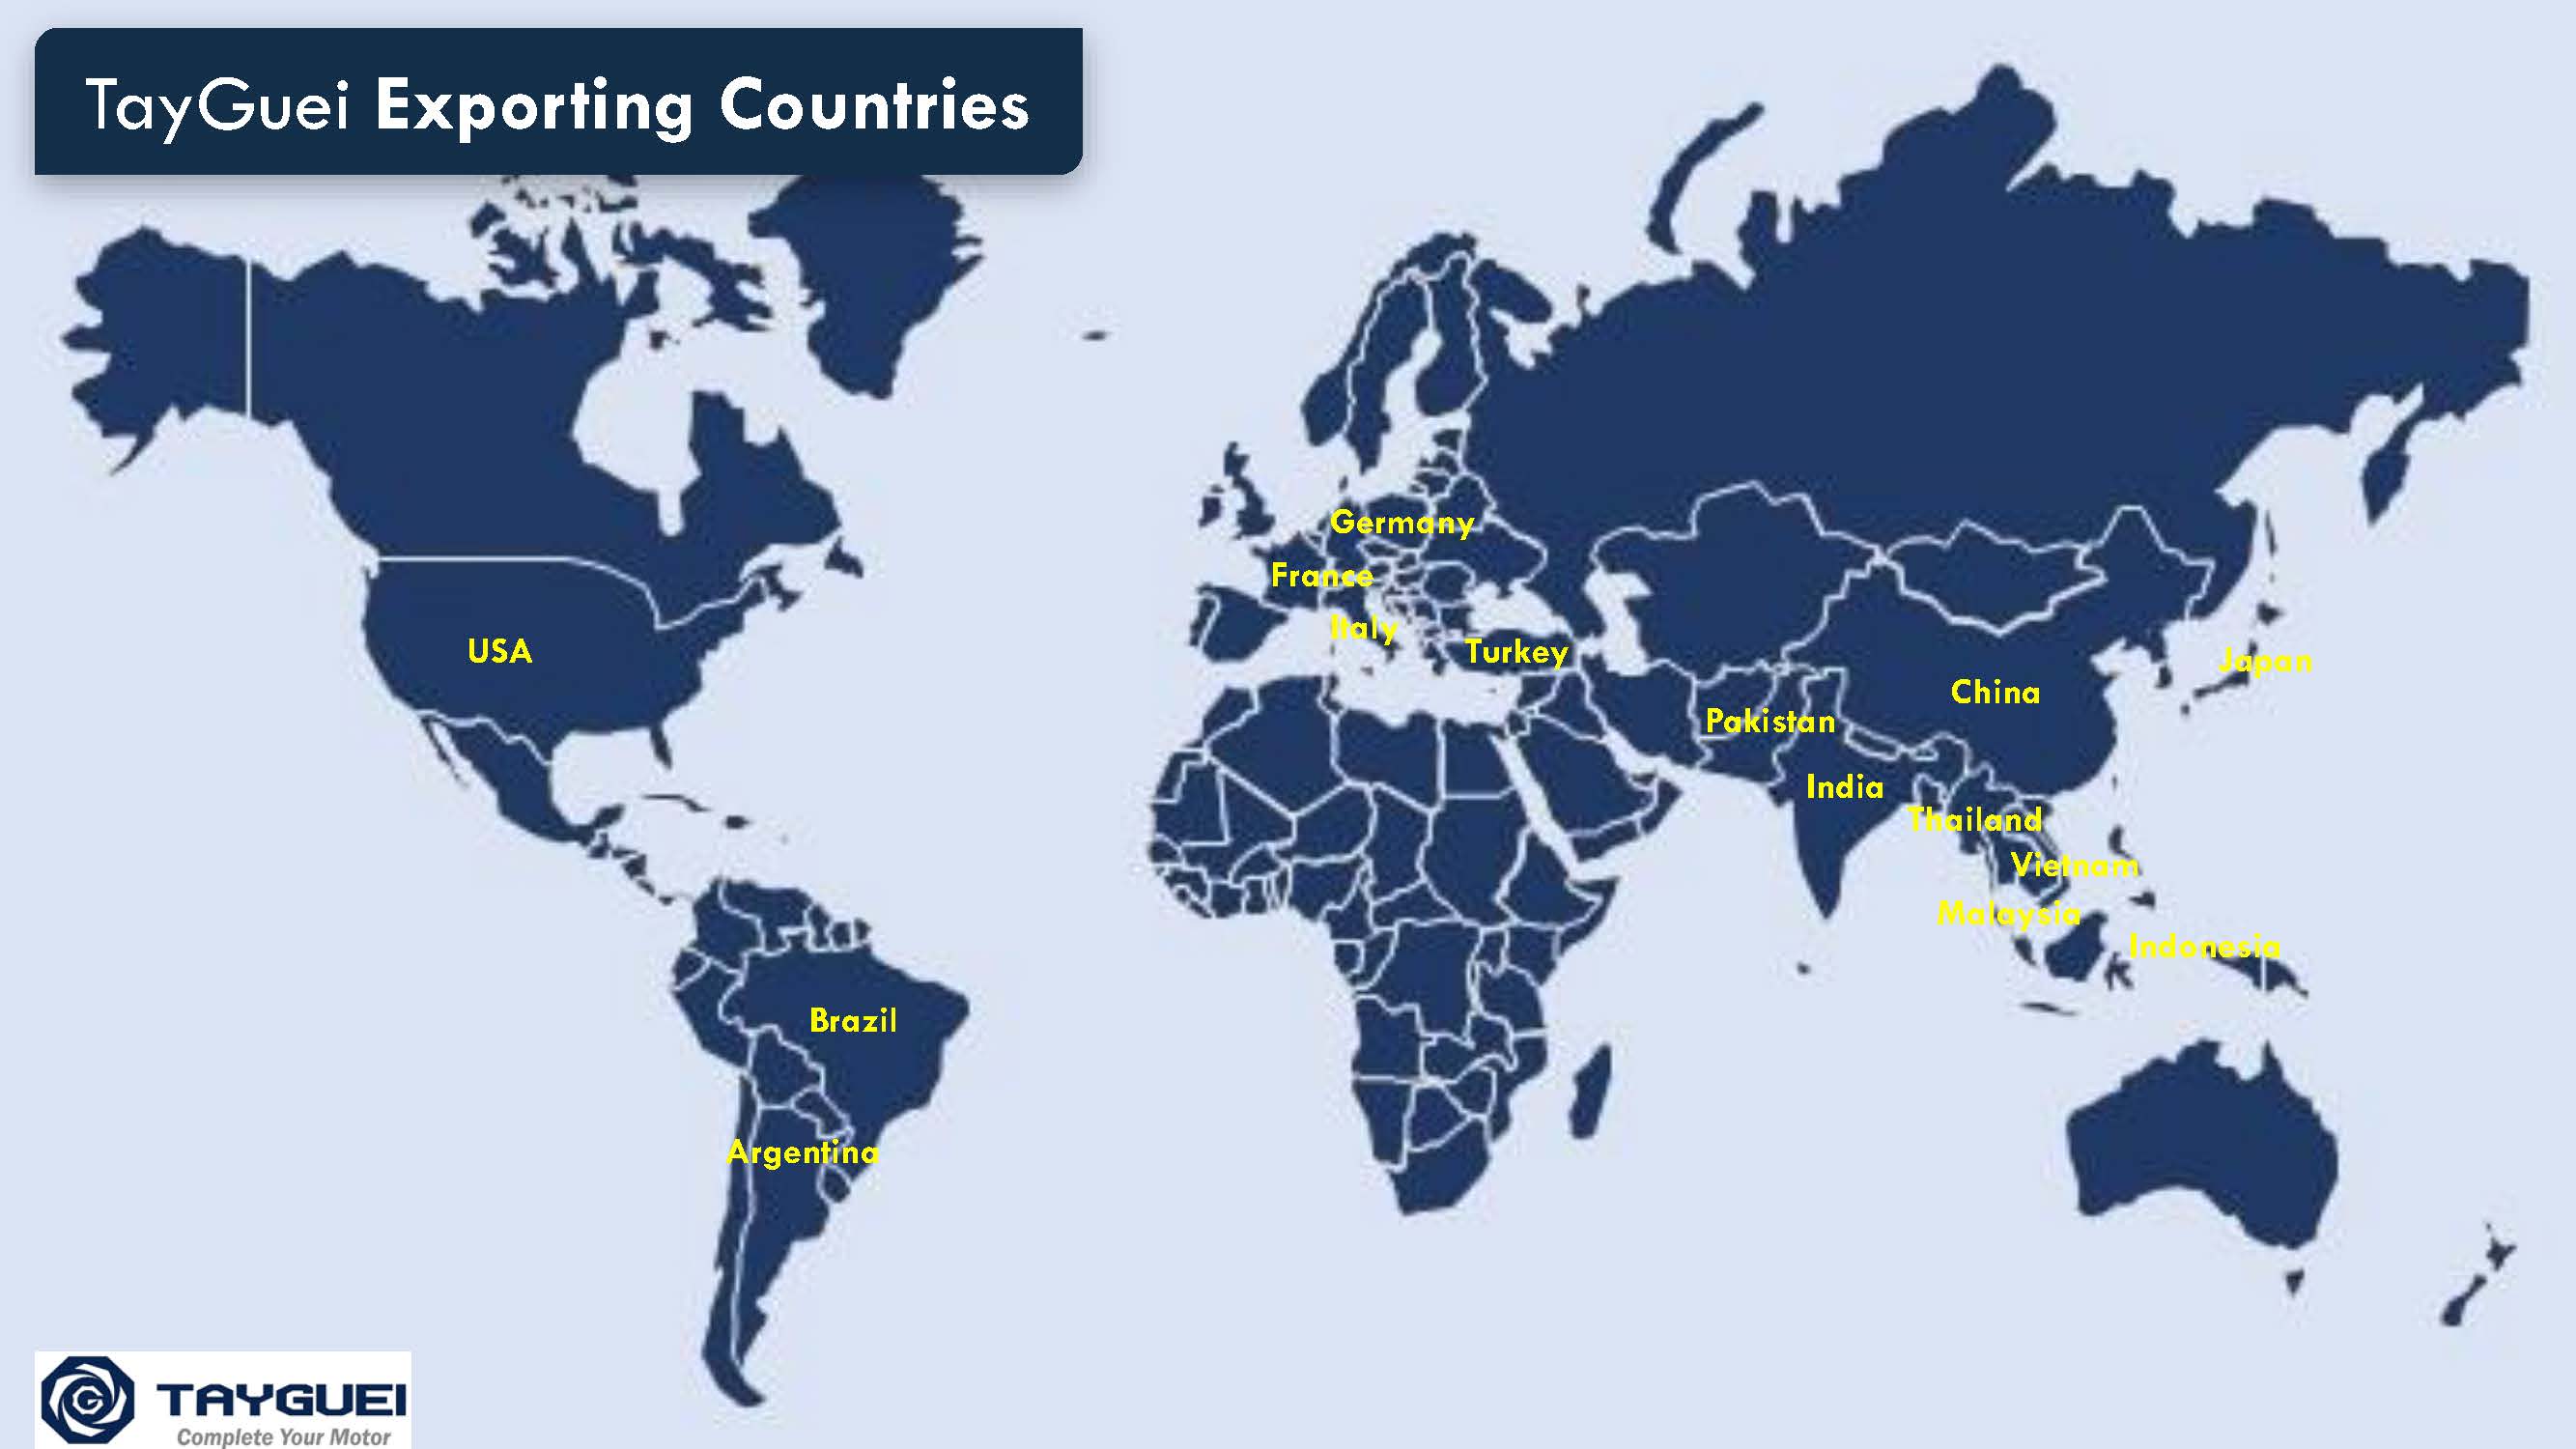 محصولات به بیش از ۱۵ کشور در سراسر جهان صادر می شوند.